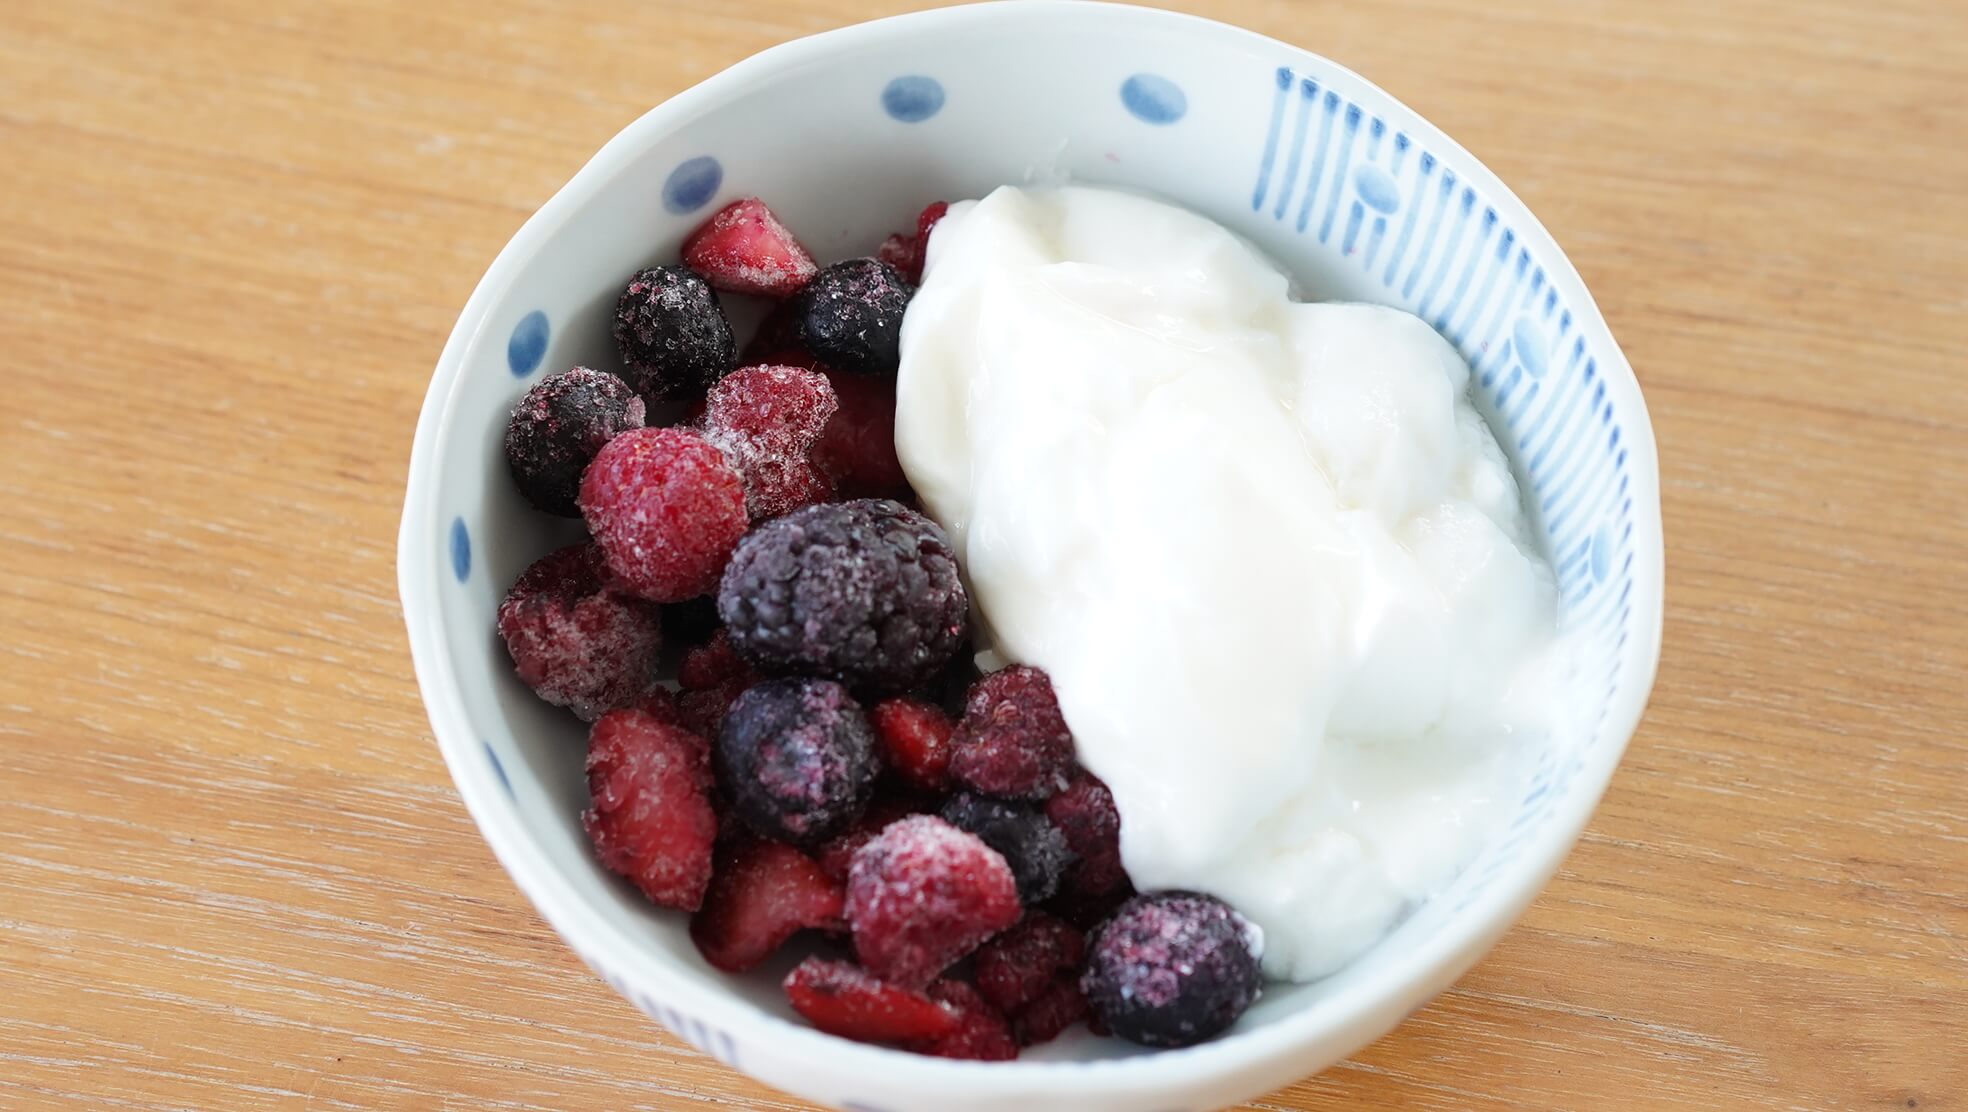 イオン・トップバリュ(TOPVALU)の冷凍食品「4種のベリーミックス」をヨーグルトに盛りつけた写真